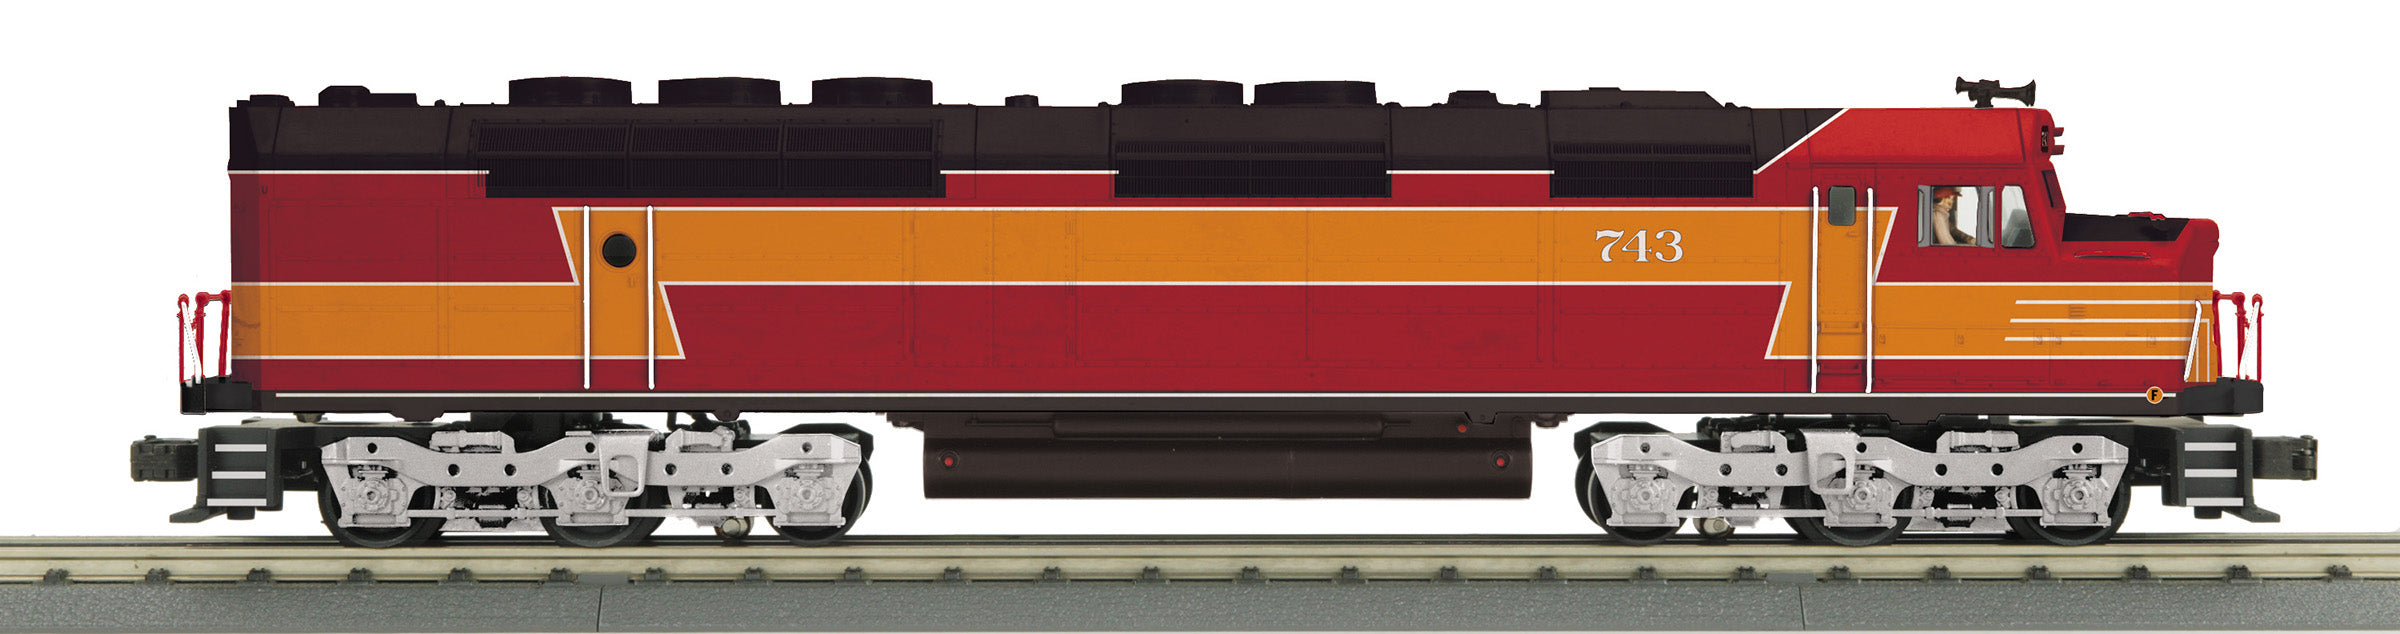 MTH 30-21221-1 - FP45 Diesel Locomotive "Daylight Locomotive & Machine Works" #743 w/ PS3